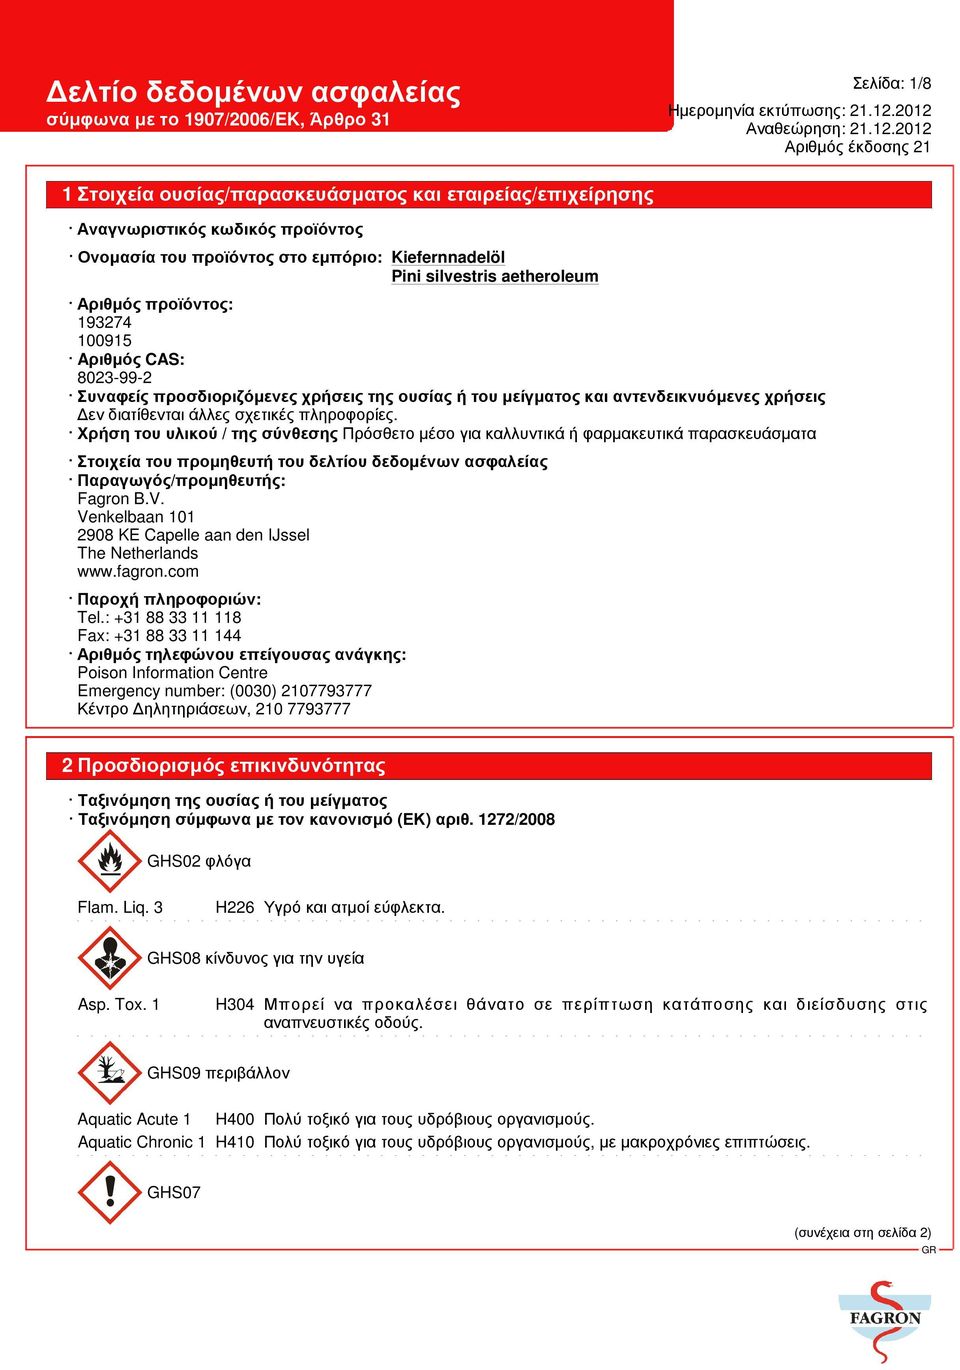 Χρήση του υλικού / της σύνθεσης Πρόσθετο µέσο για καλλυντικά ή φαρµακευτικά παρασκευάσµατα Στοιχεία του προµηθευτή του δελτίου δεδοµένων ασφαλείας Παραγωγός/προµηθευτής: Fagron B.V.